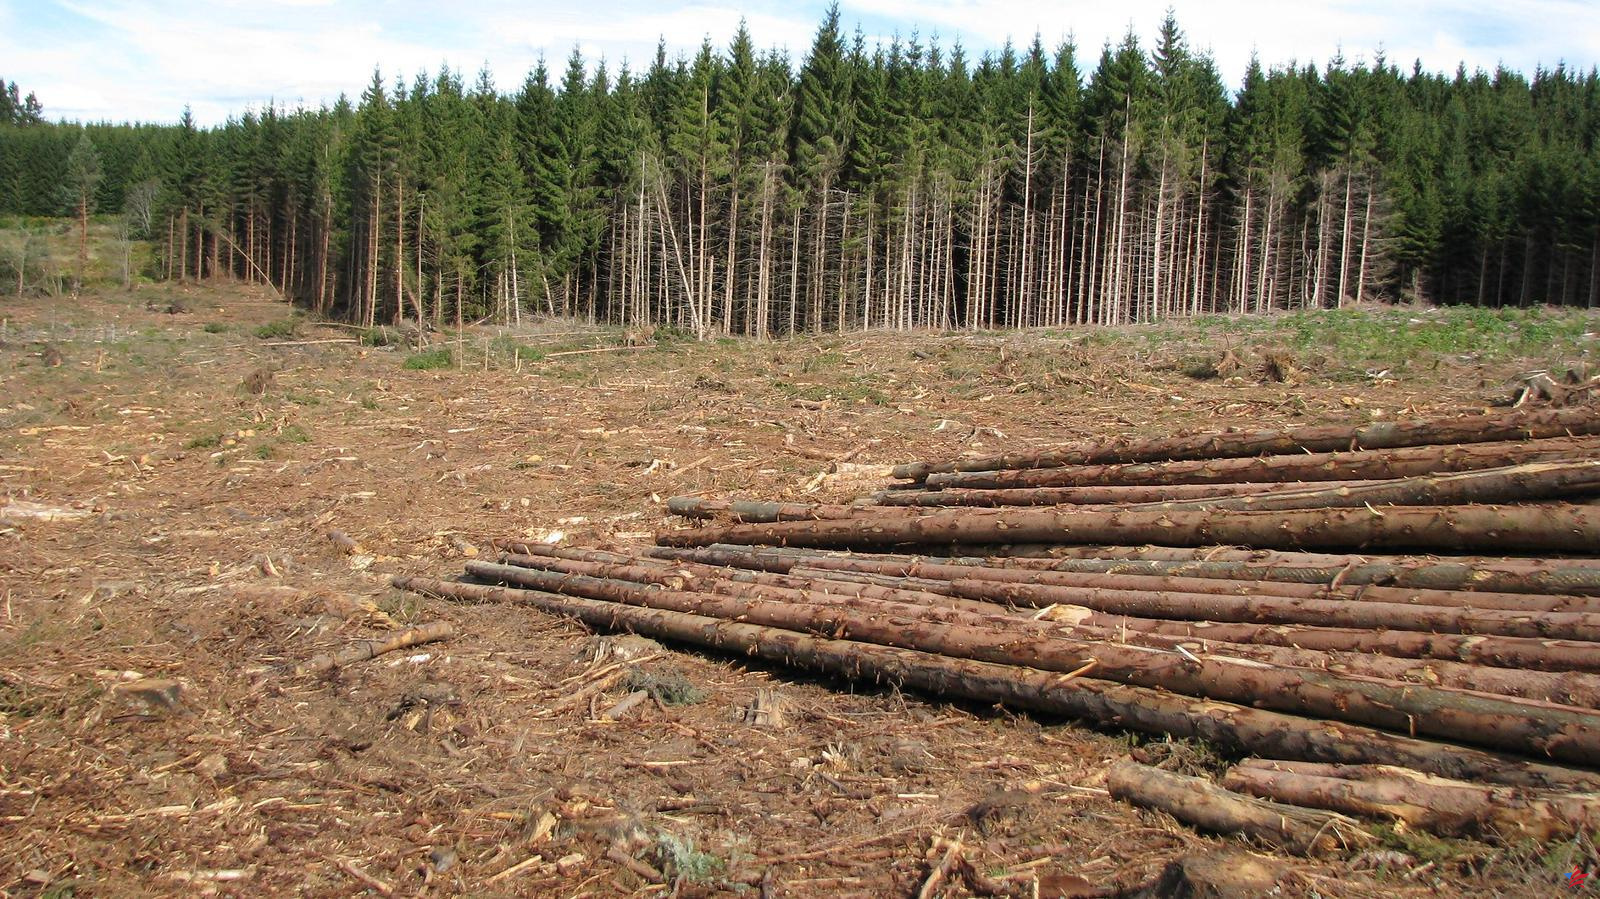 Adaptar los bosques al cambio climático: un diputado de Gironda quiere regular la tala de árboles